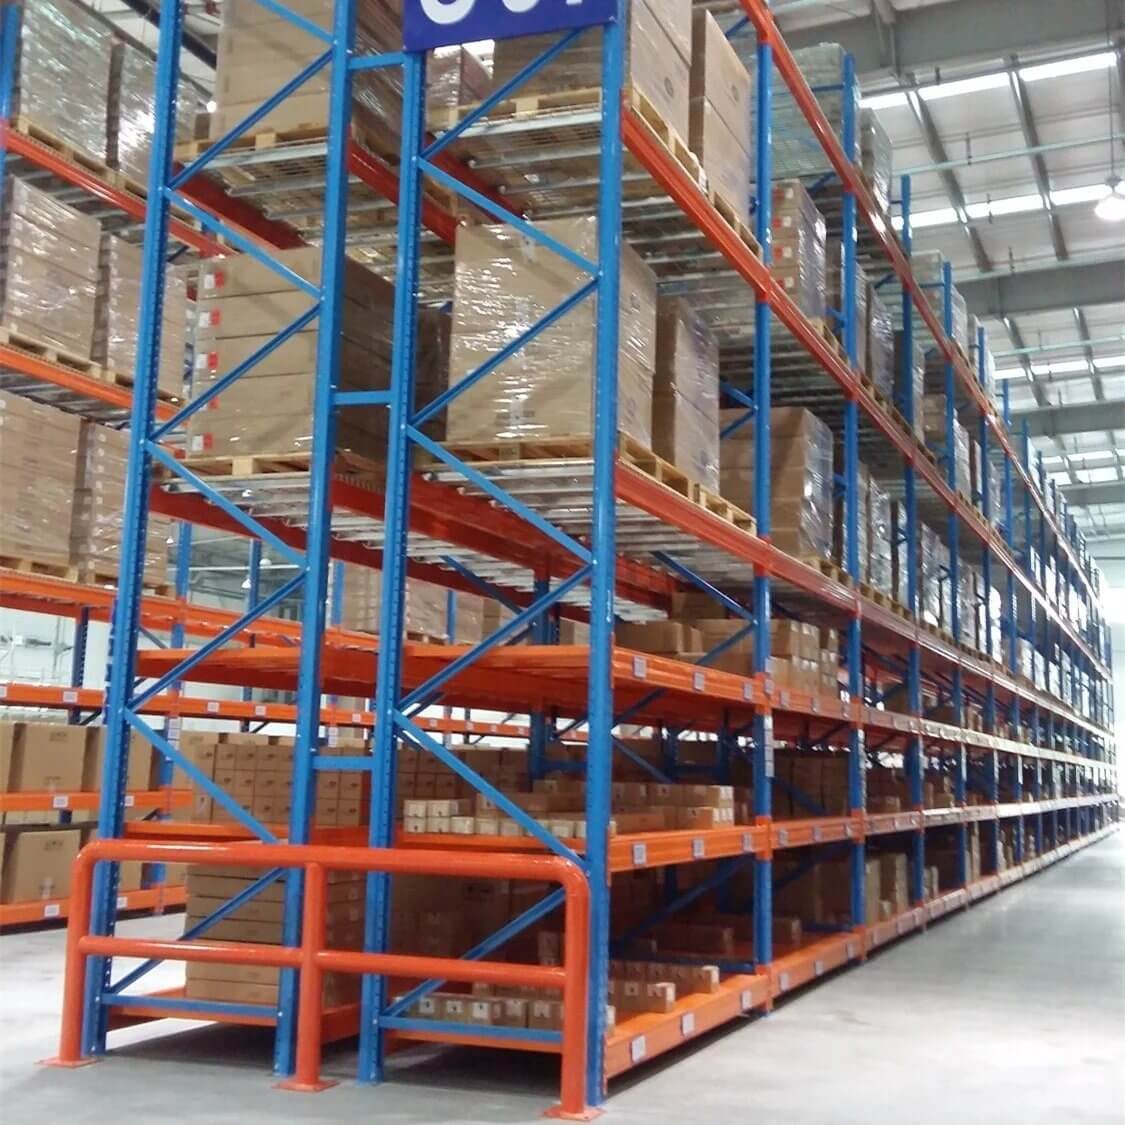 Modern Warehouse Storage Rack Suppliers In Noida, Delhi